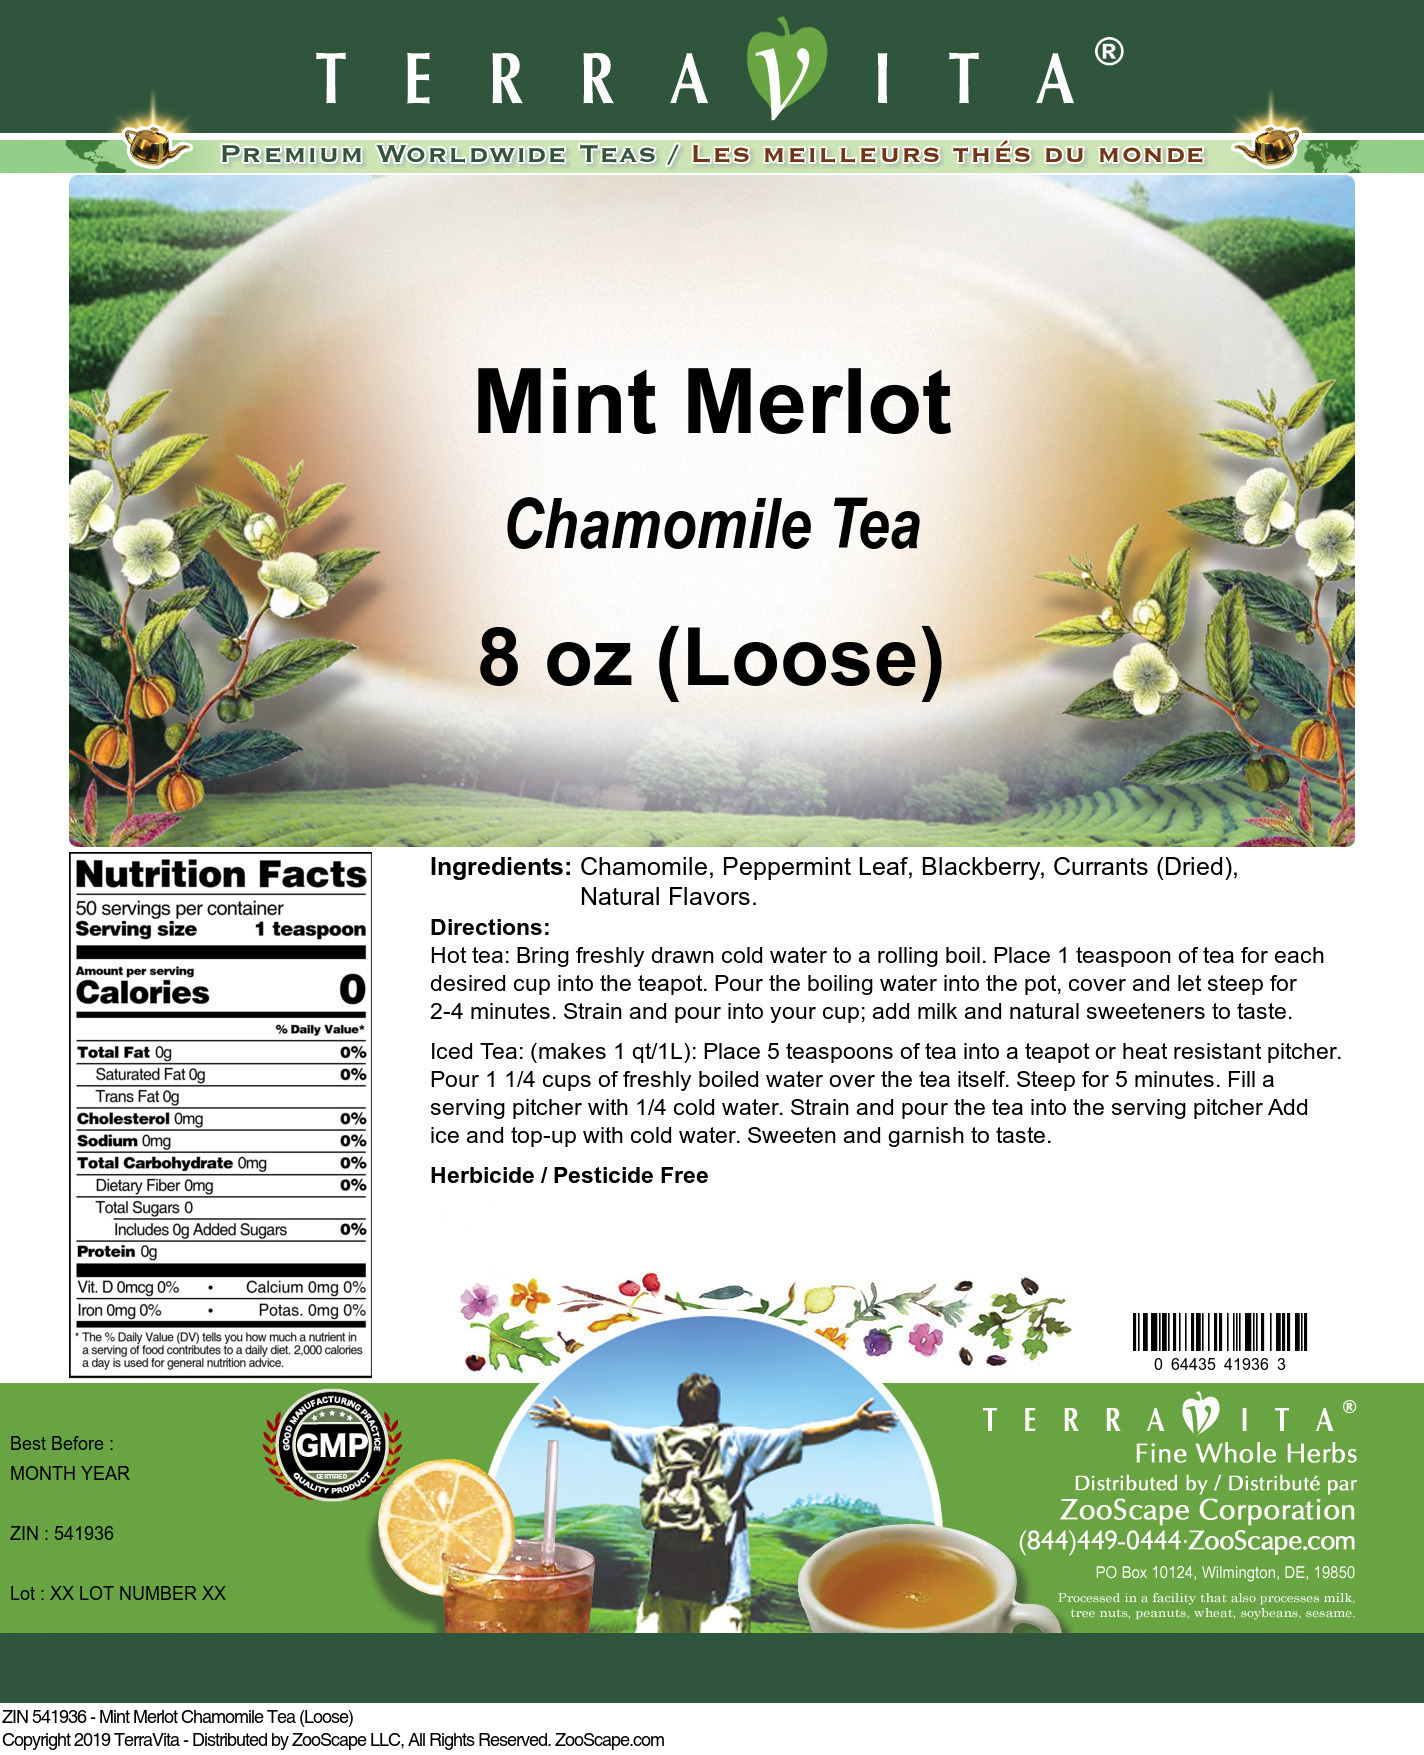 Mint Merlot Chamomile Tea (Loose) - Label